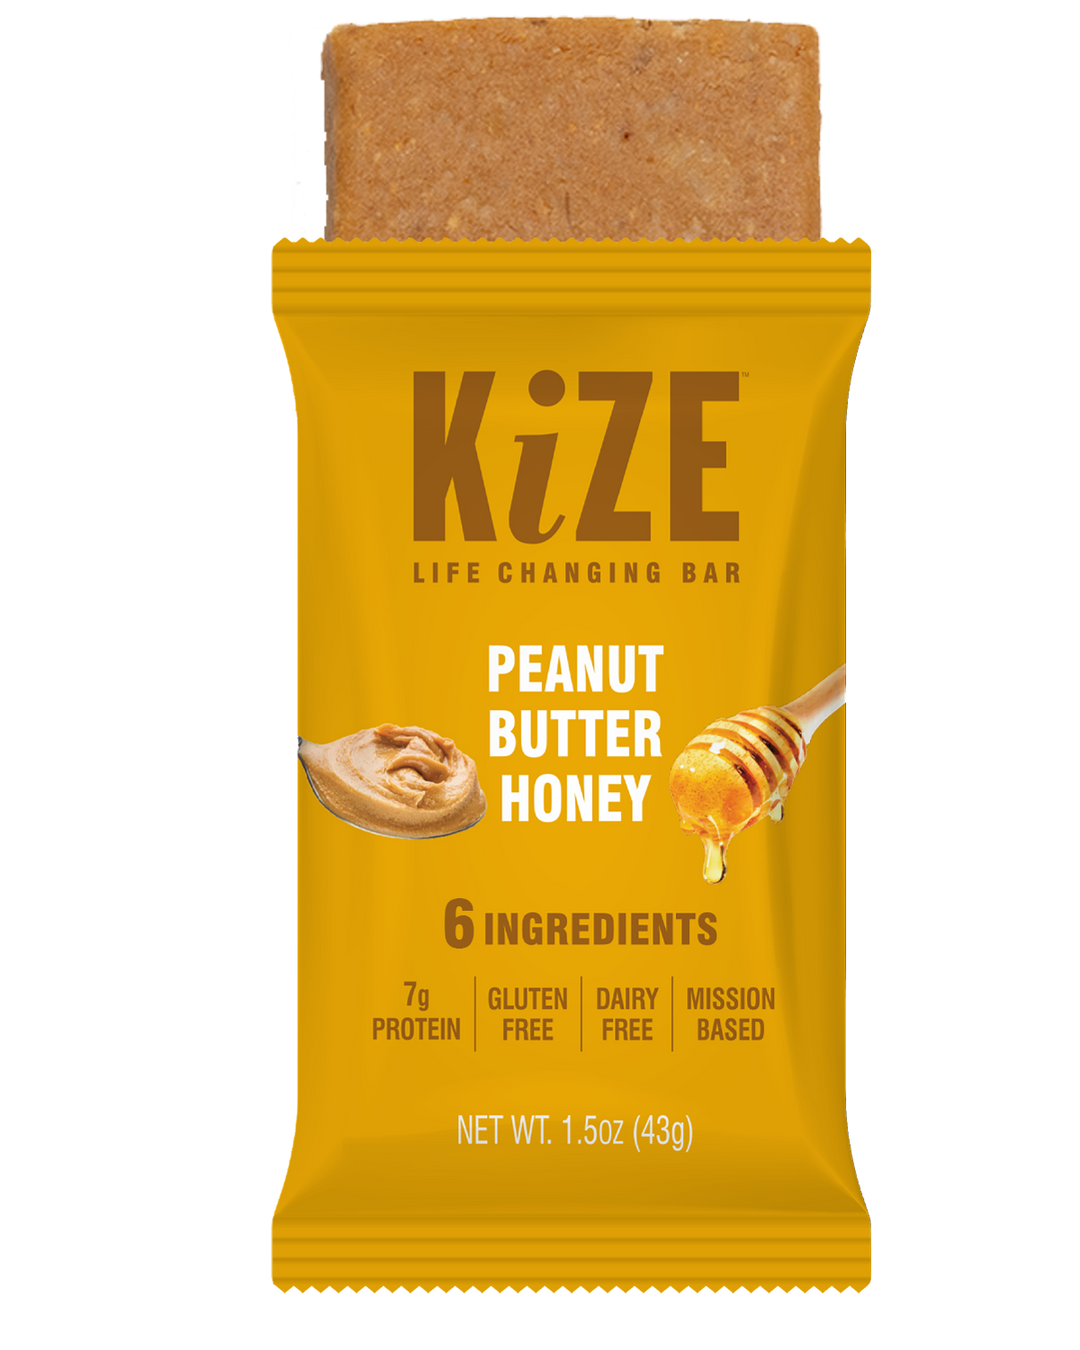 Kize Peanut Butter Honey Energy Bar Packaging